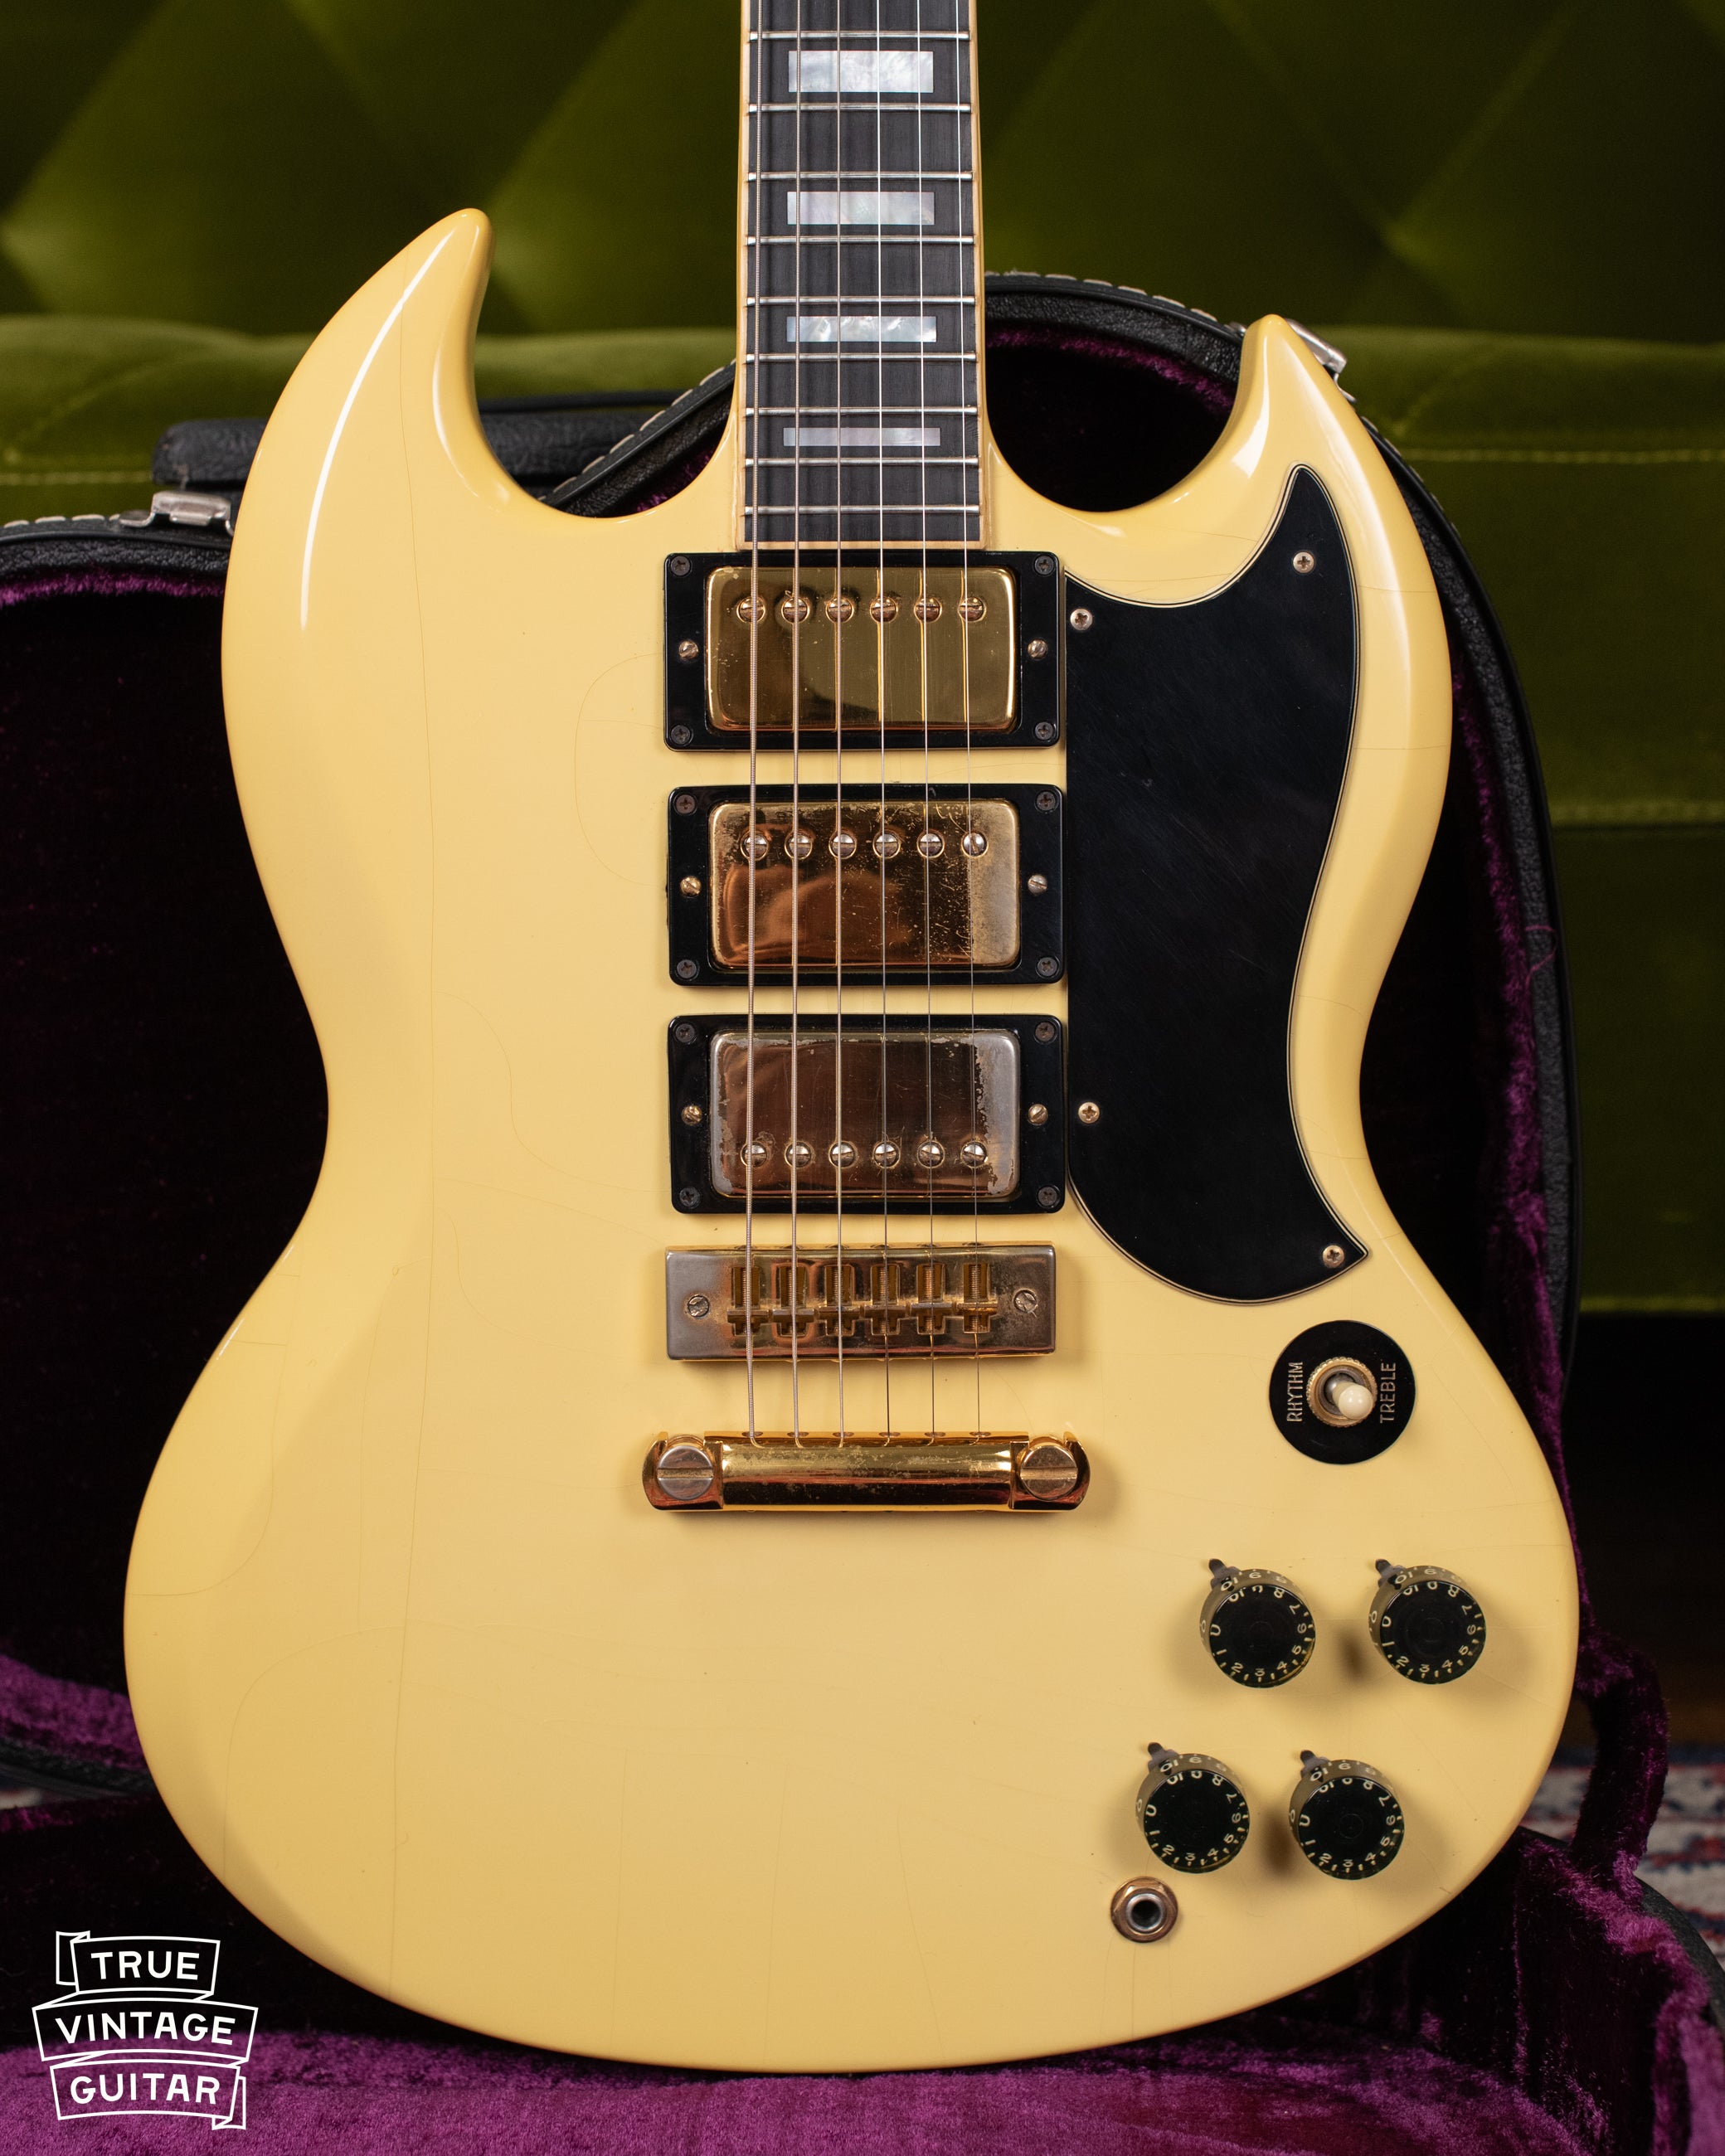 1974 Gibson Sg Custom White True Vintage Guitar